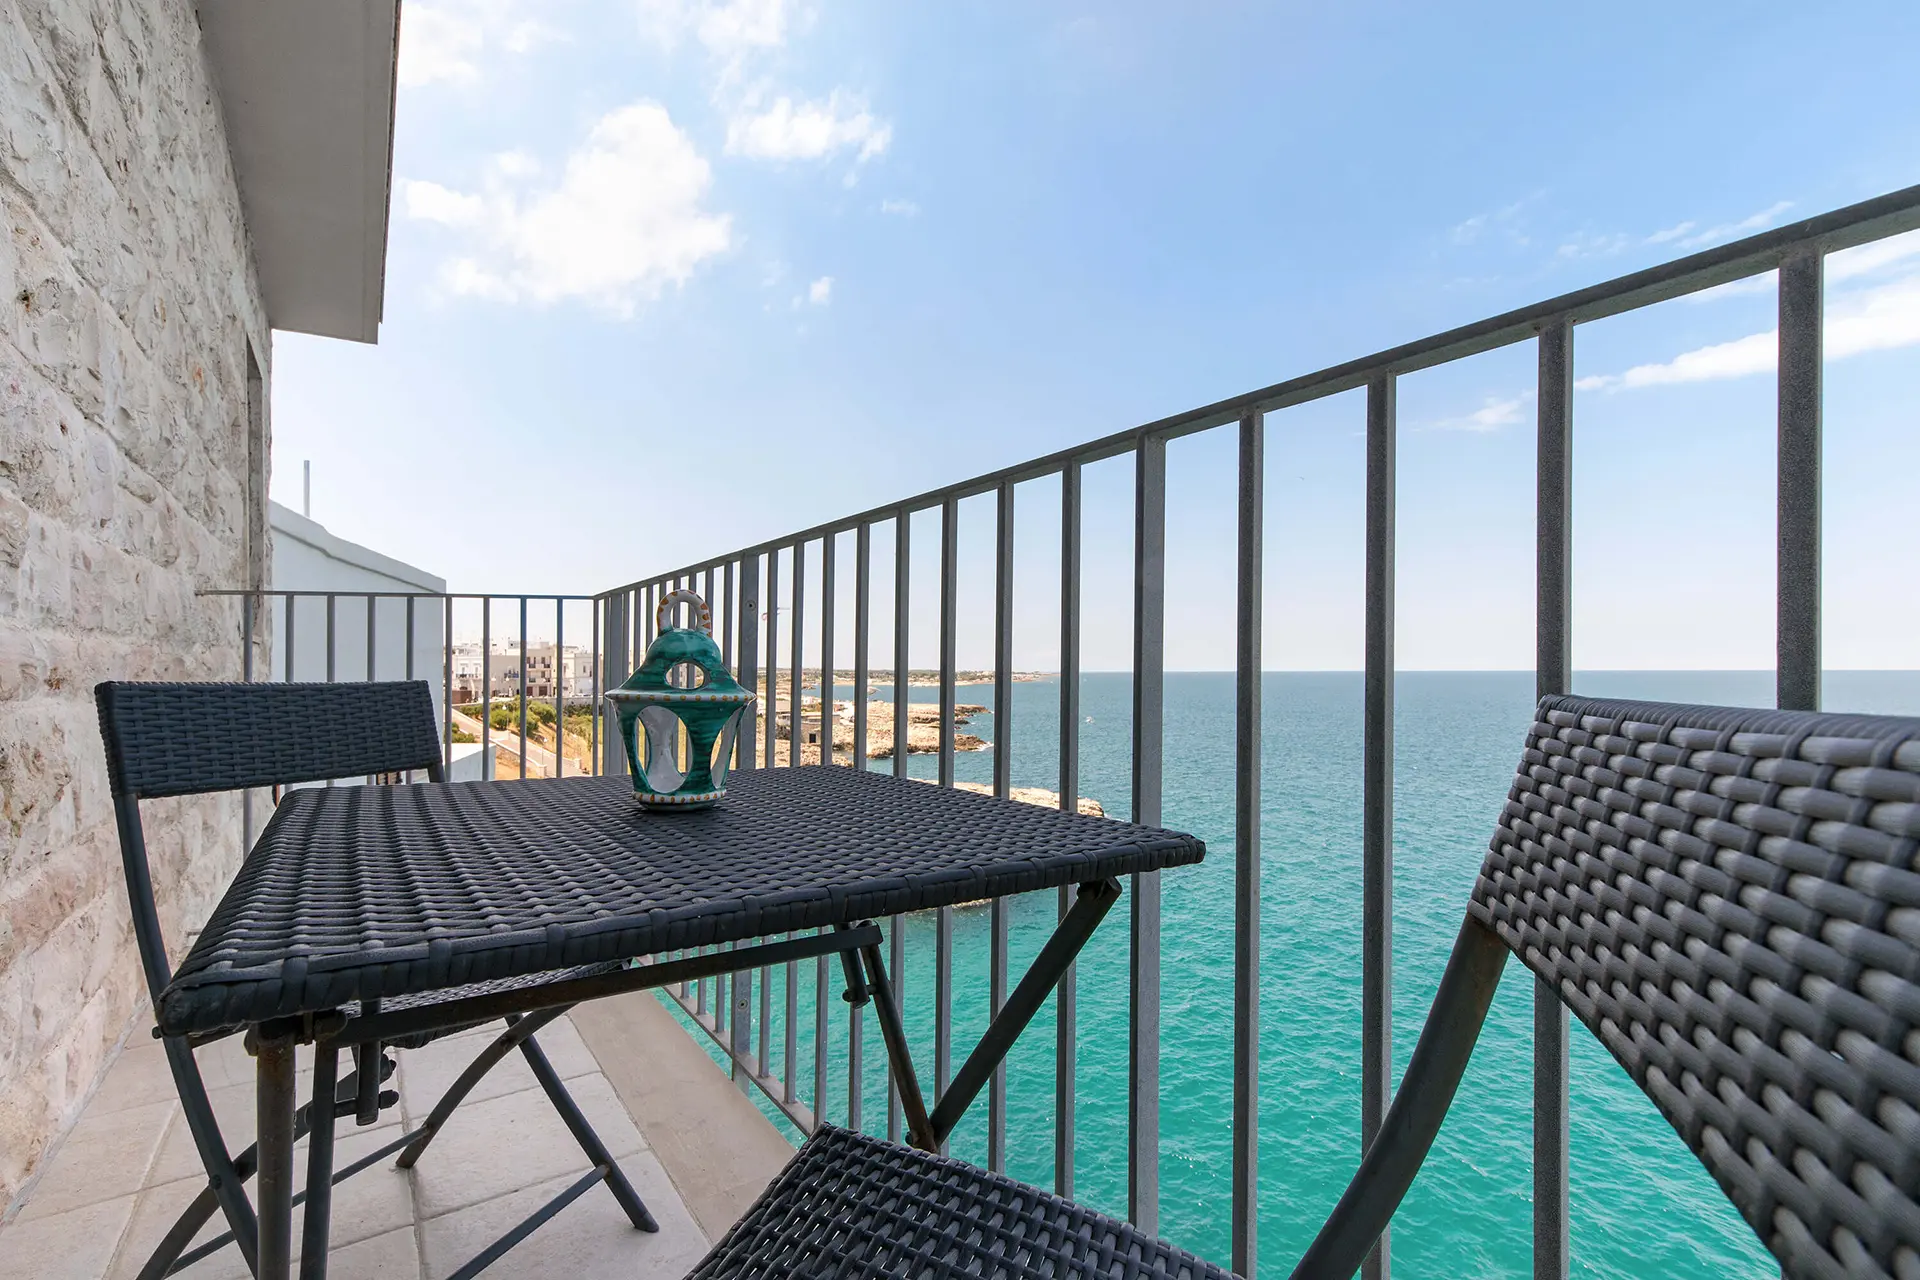 la table à café sur le balcon pour profiter de la vue et béneficiér de la brise marine